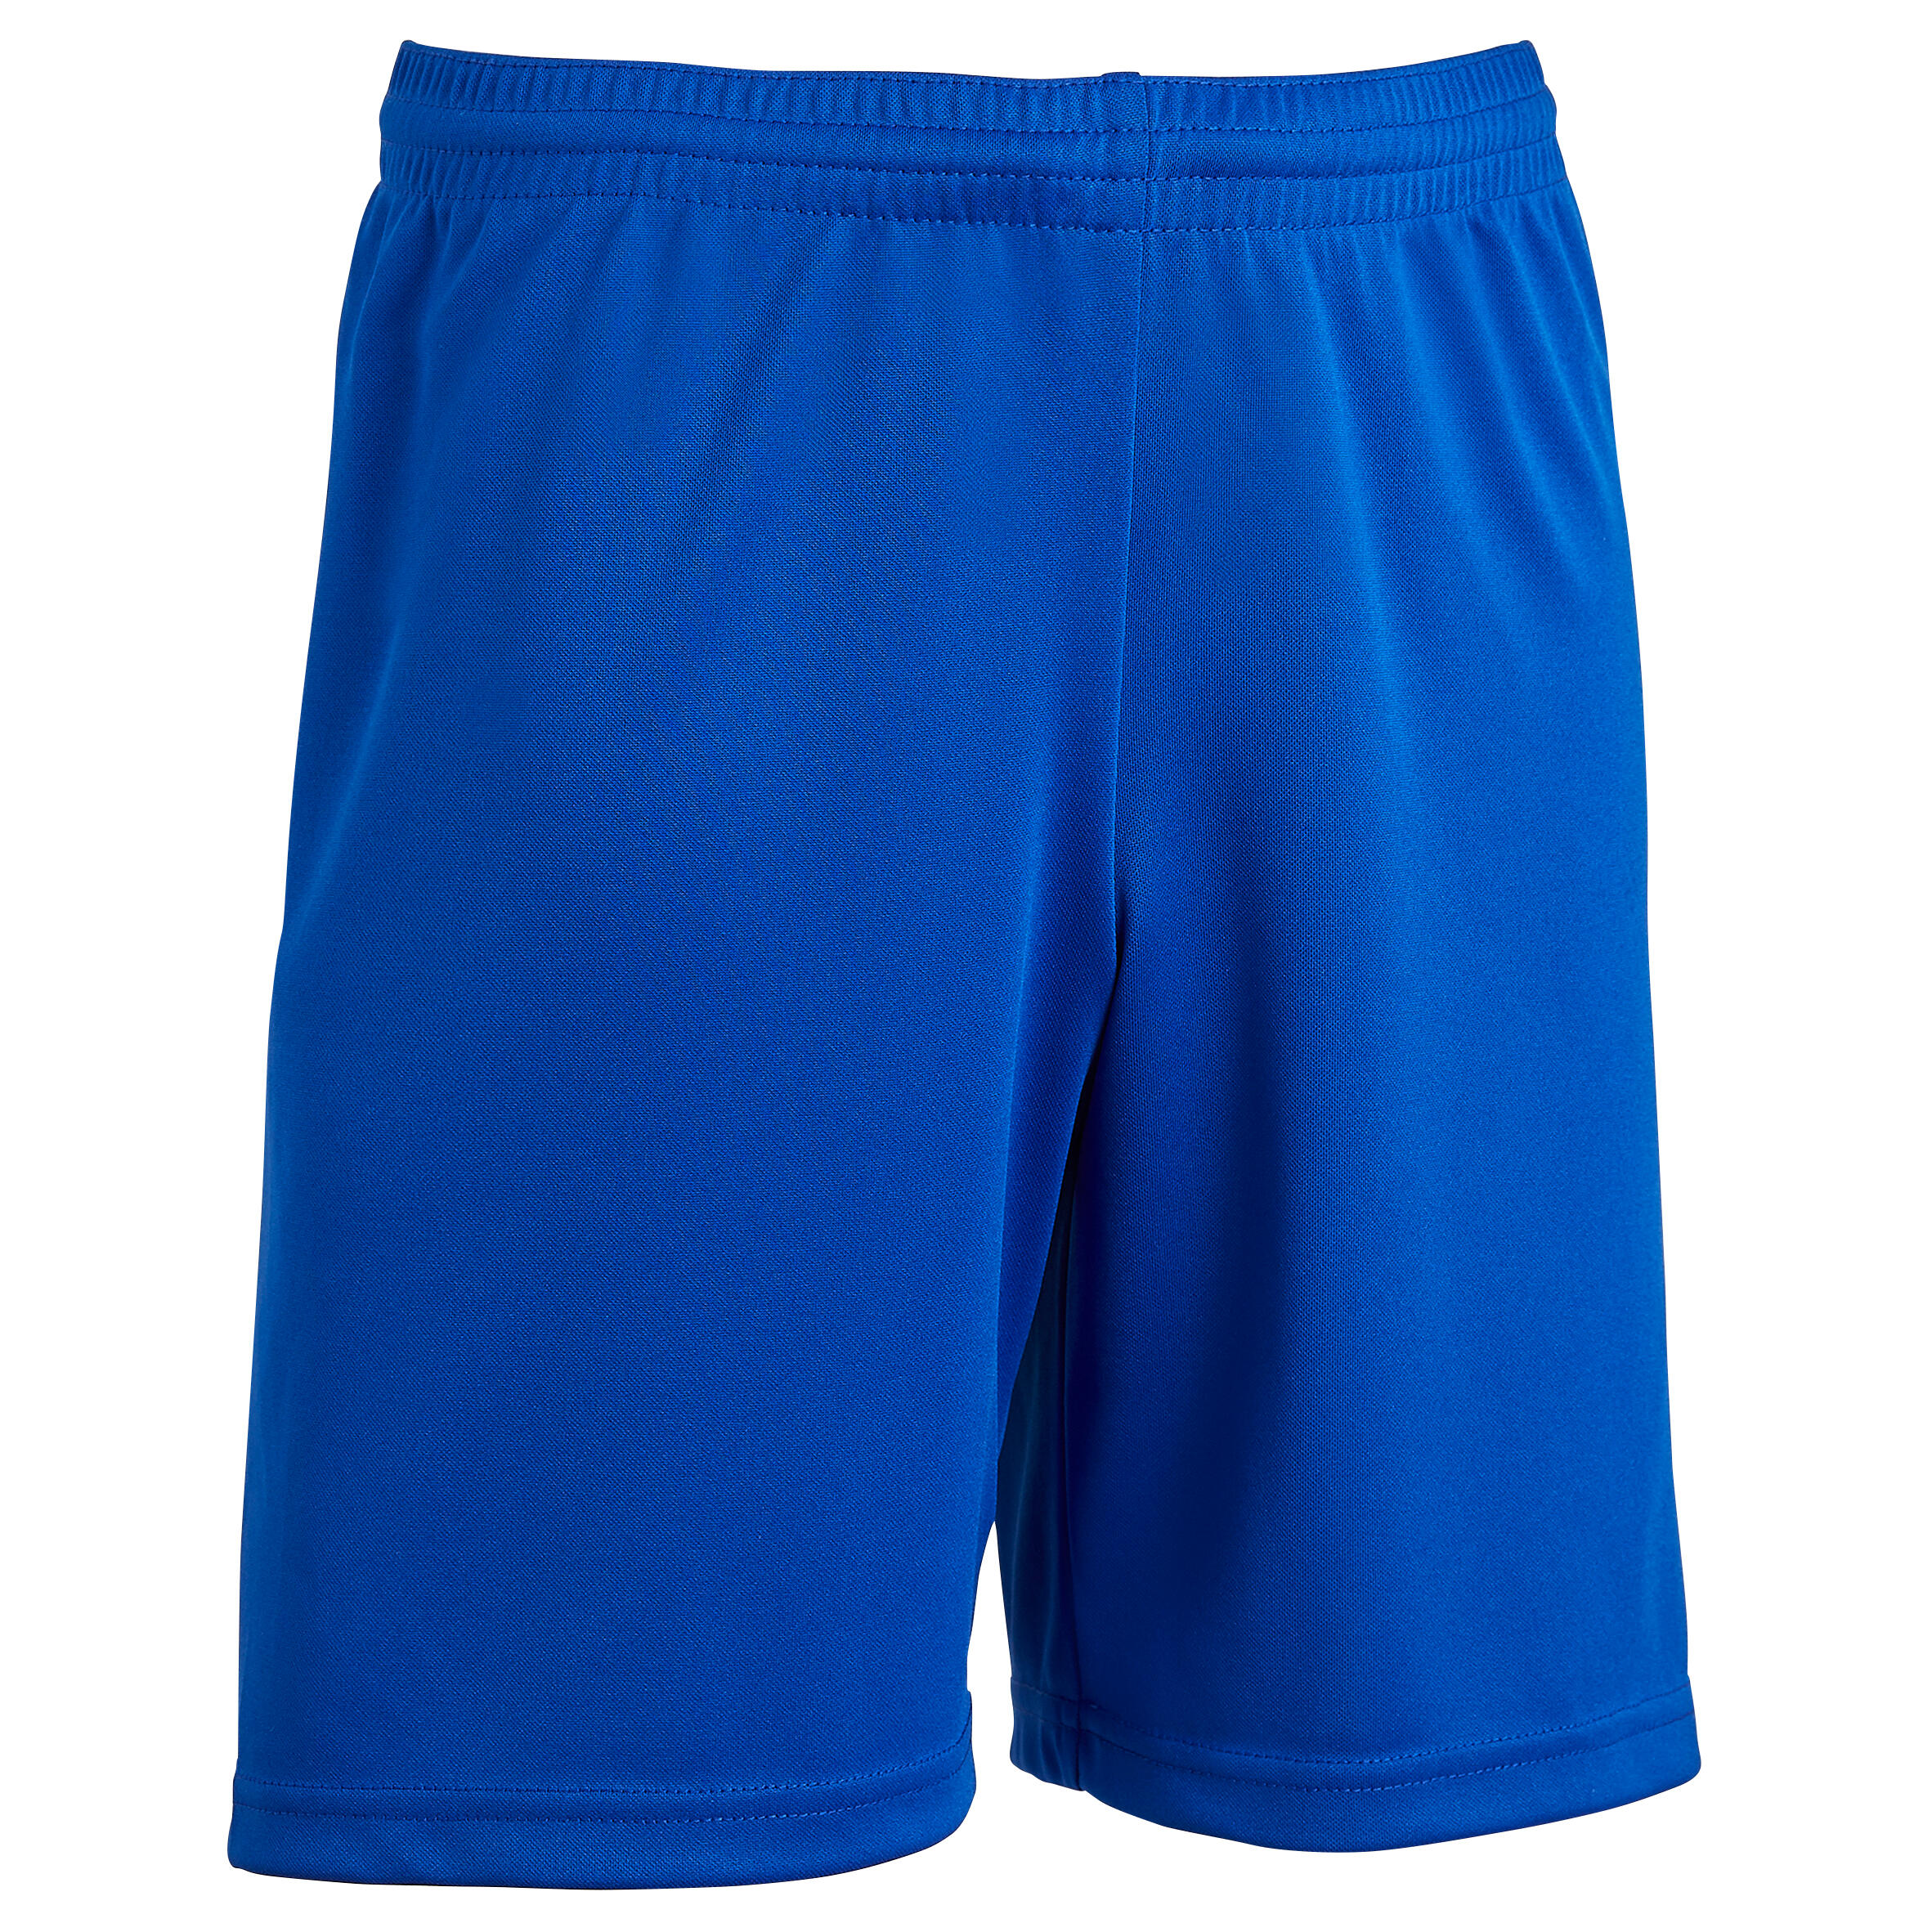 pantalon corto deporte niño azul marino